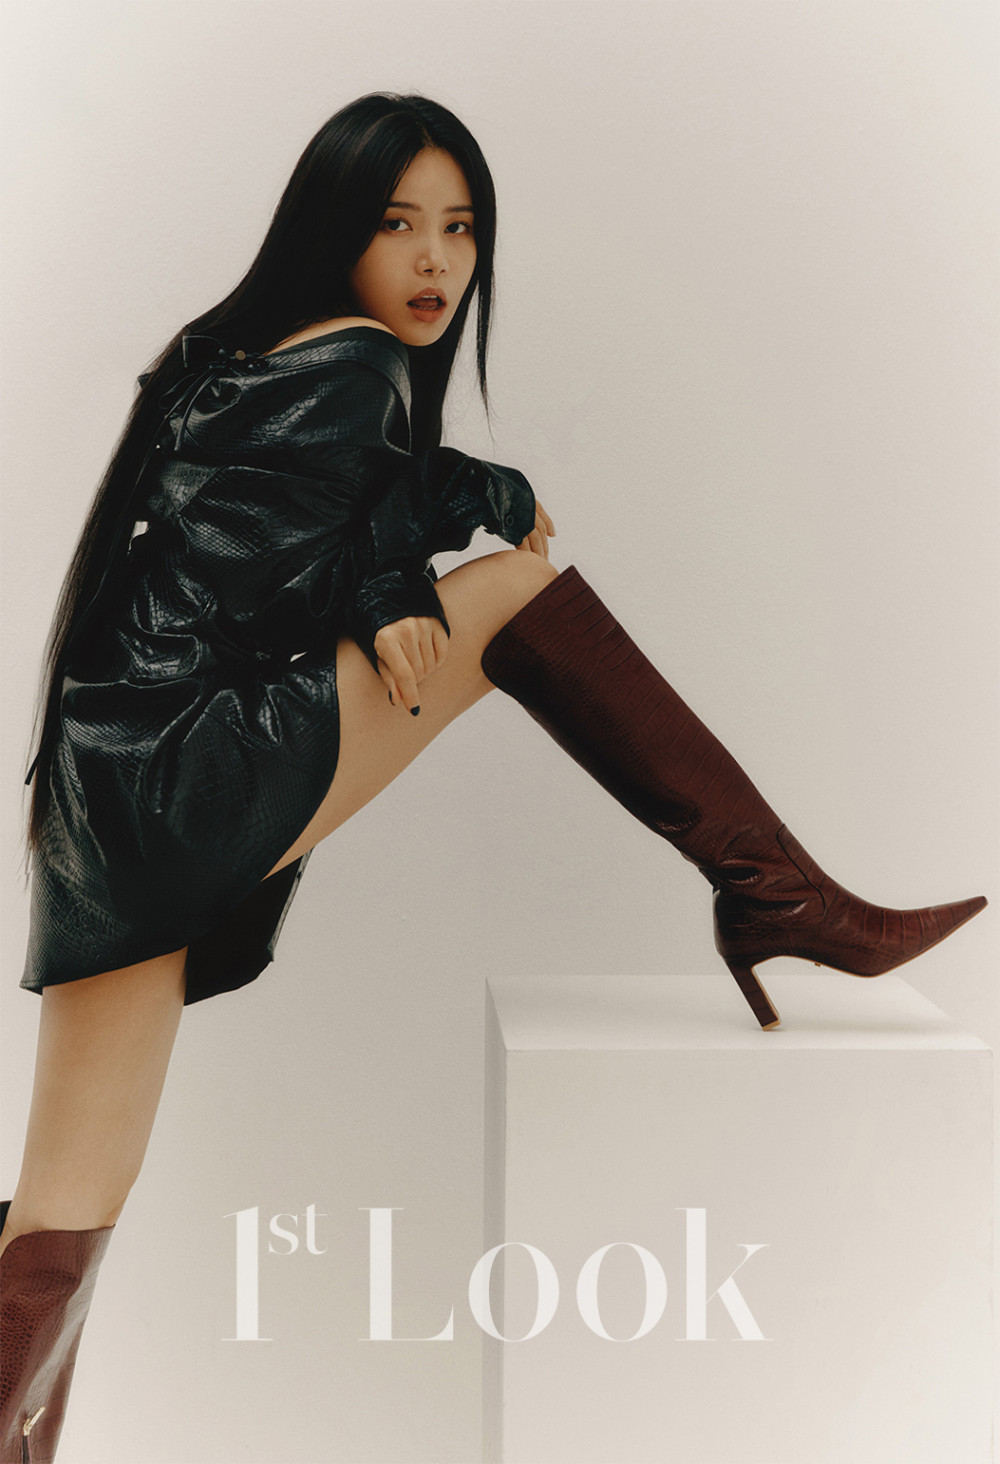 Сола из MAMAMOO демонстрирует свой модный образ в фотосессии для "1st Look"